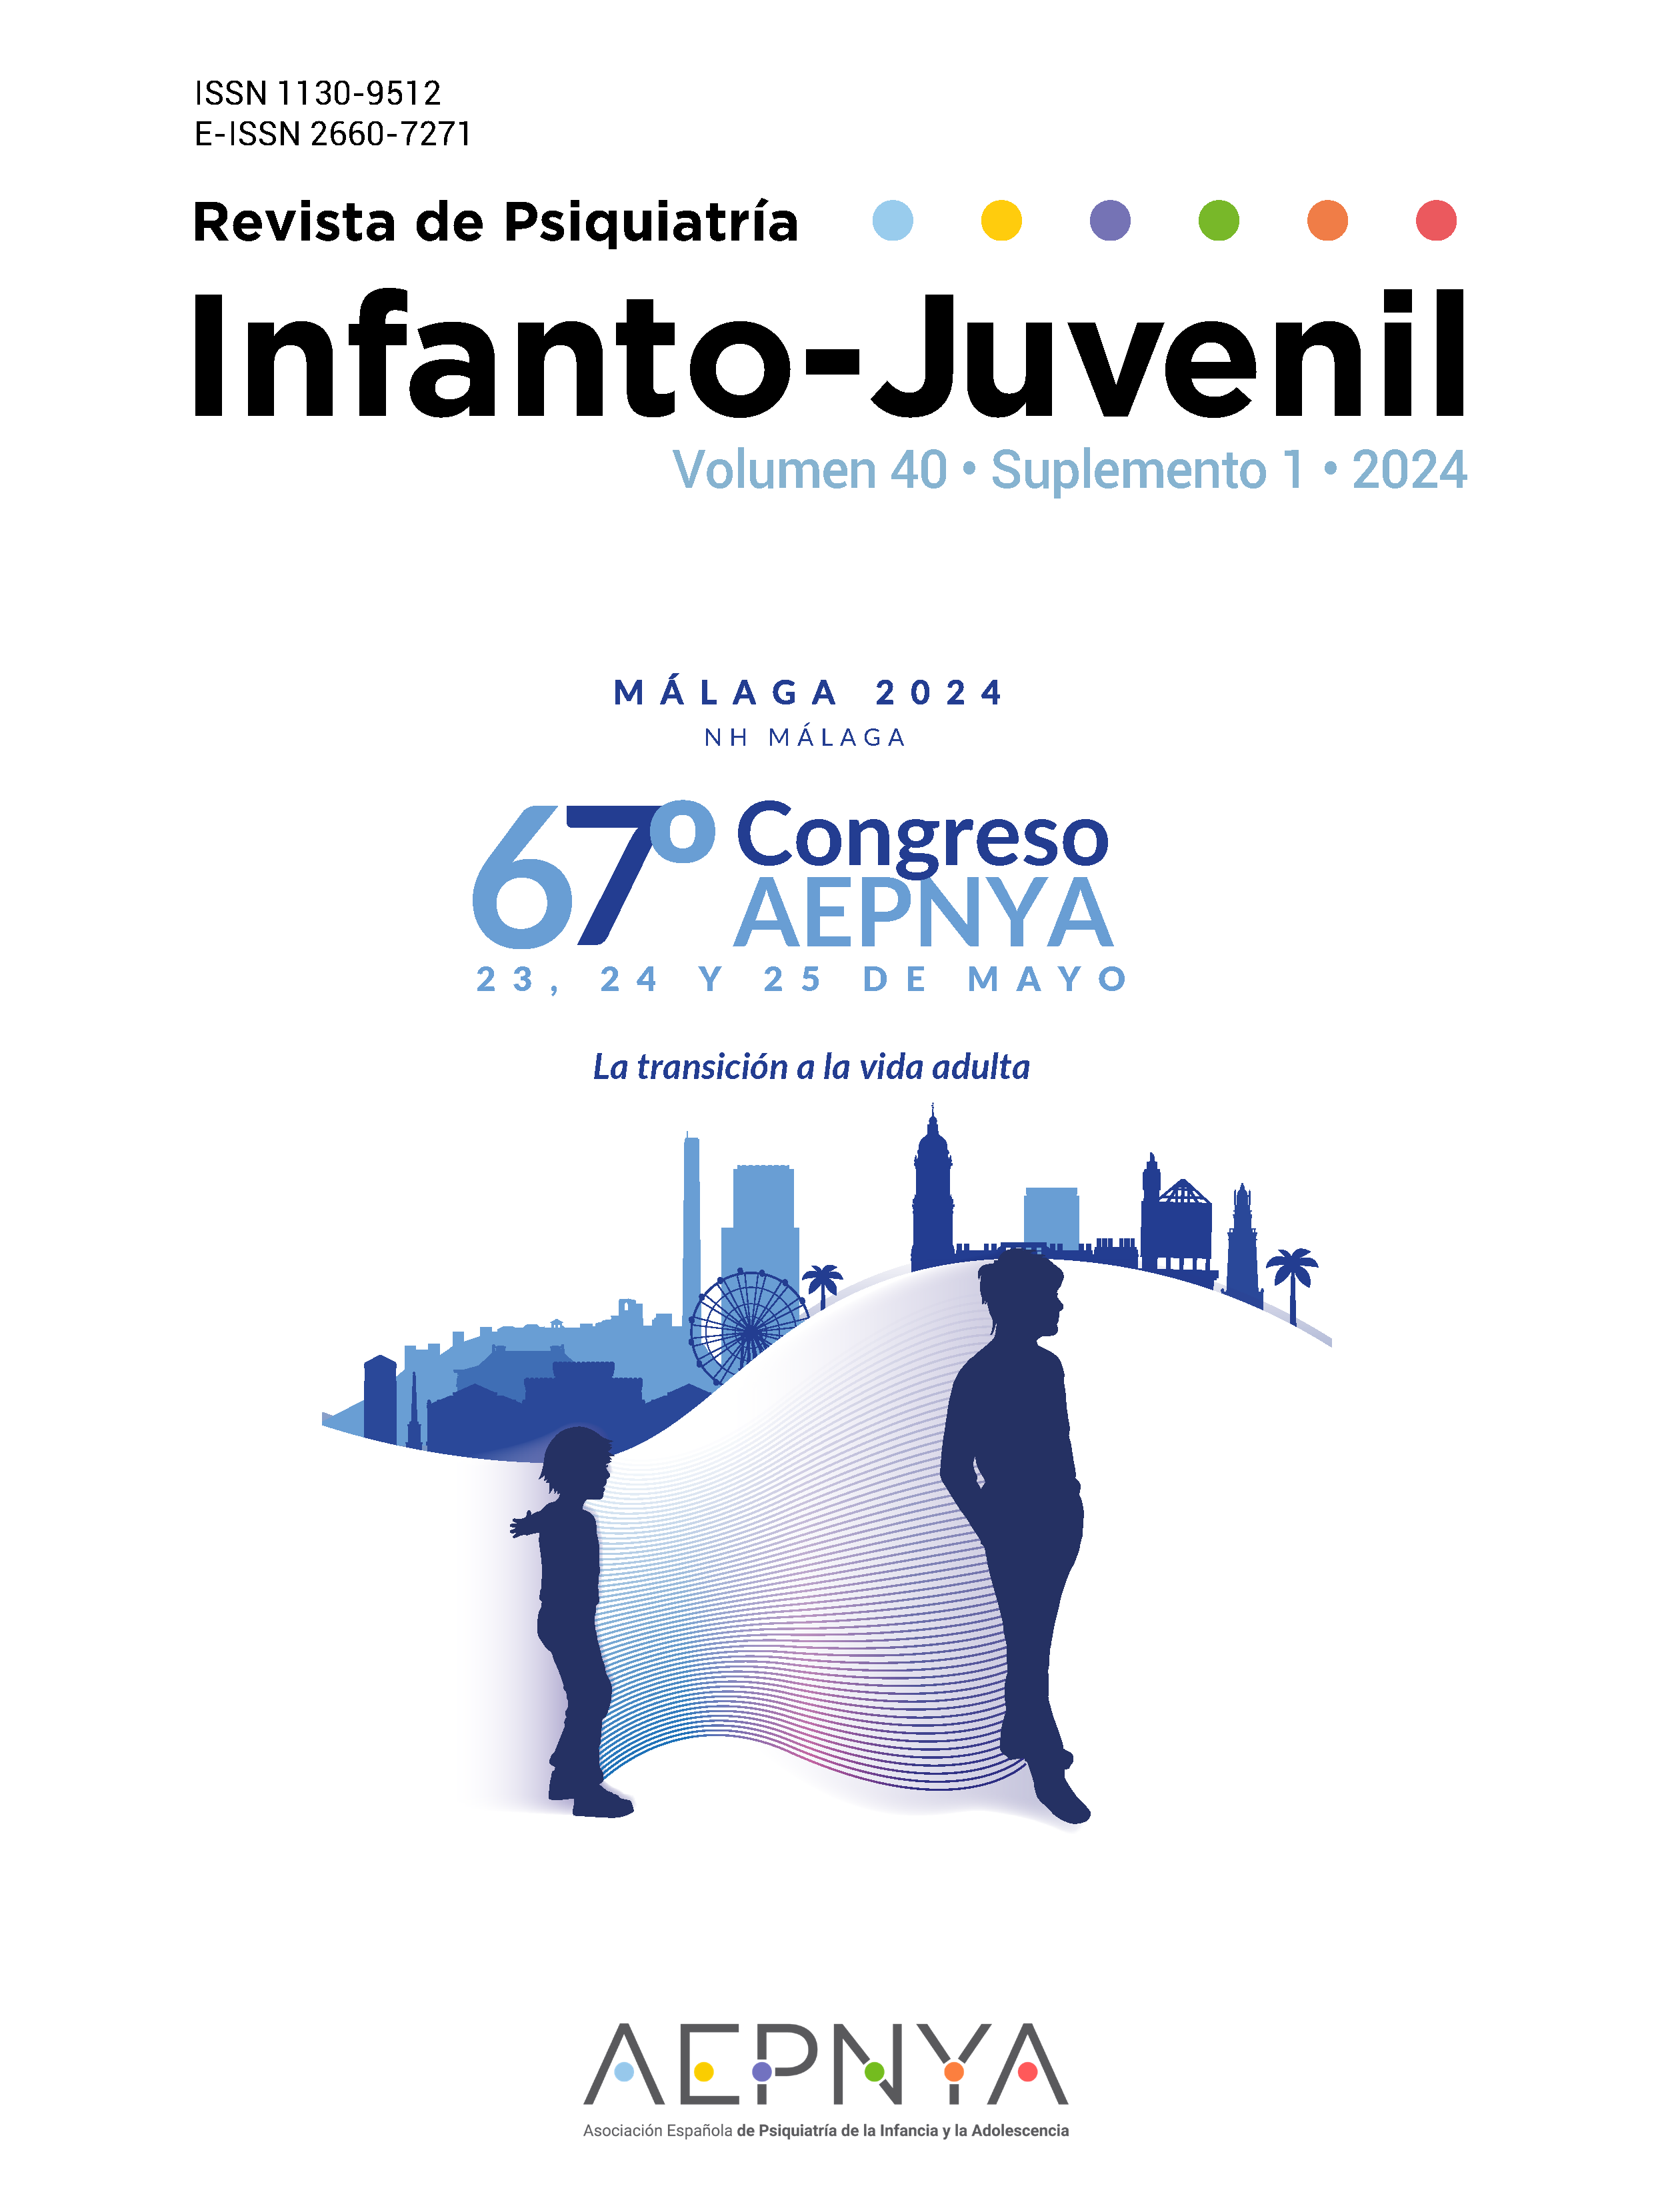 					View Vol. 41 No. Supl. 1 (2024): 67 Congreso Nacional de la Asociación Española de Psiquiatría de la Infancia y la Adolescencia (AEPNYA)
				